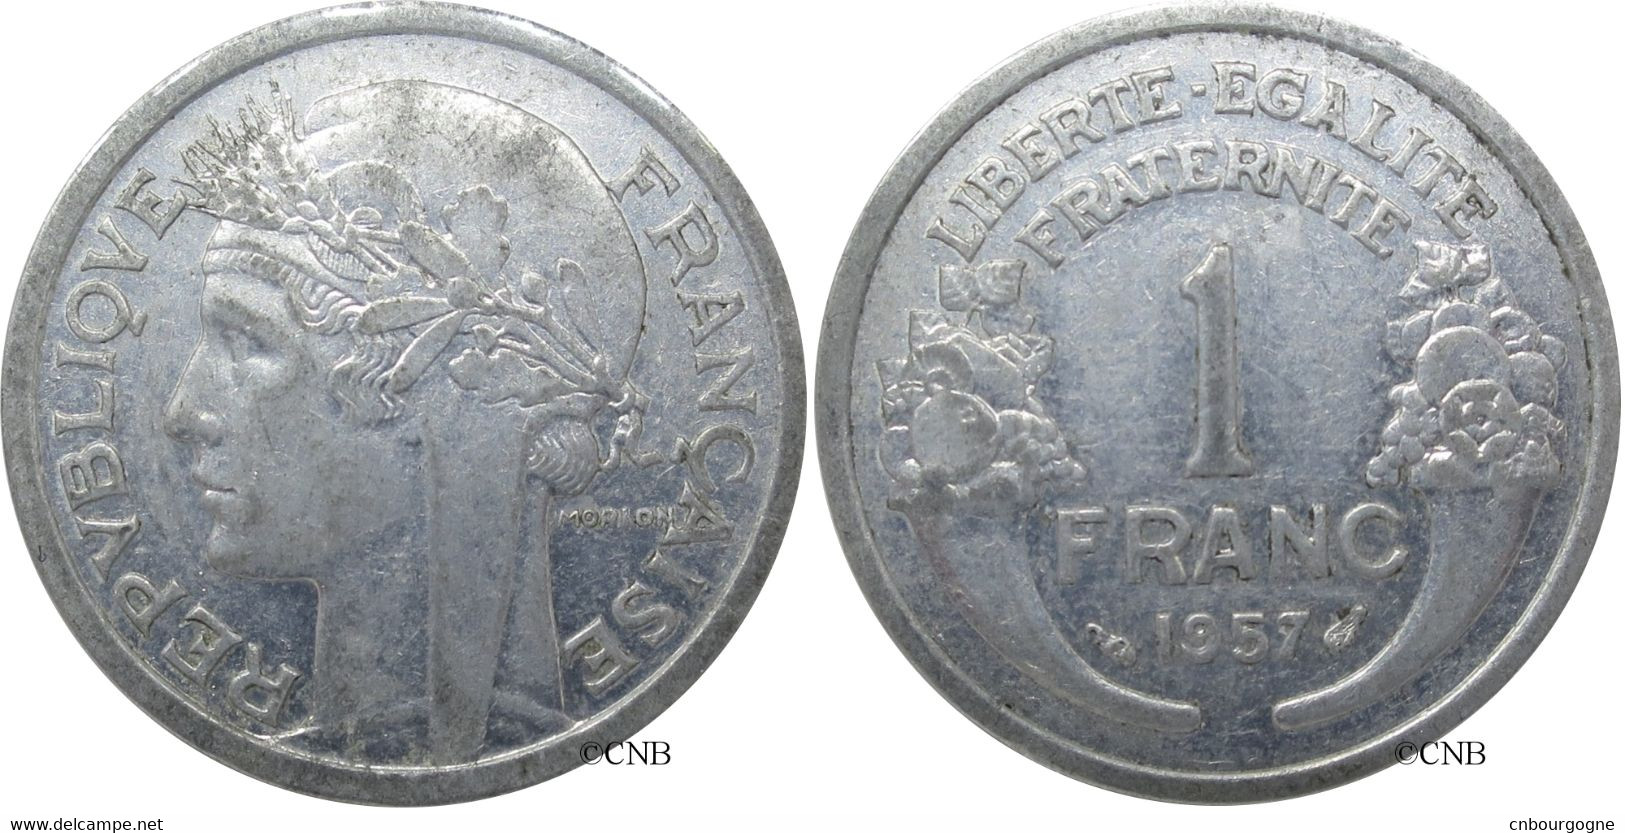 France - IVe République - 1 Franc Morlon Aluminium, Poids Léger 1957 - SUP/AU55 - Fra0846 - 1 Franc